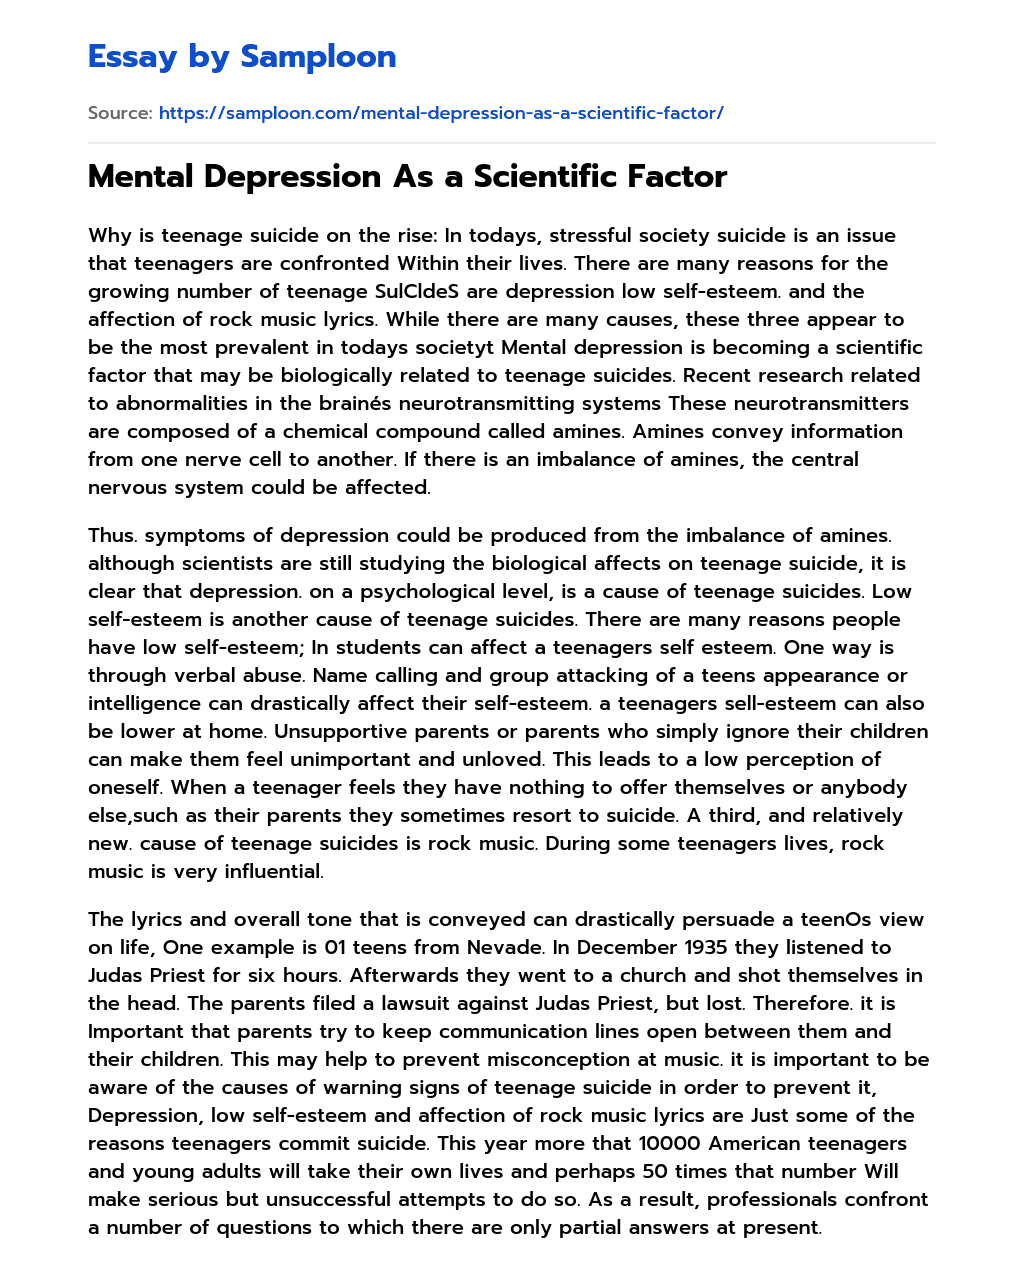 Mental Depression As a Scientific Factor essay